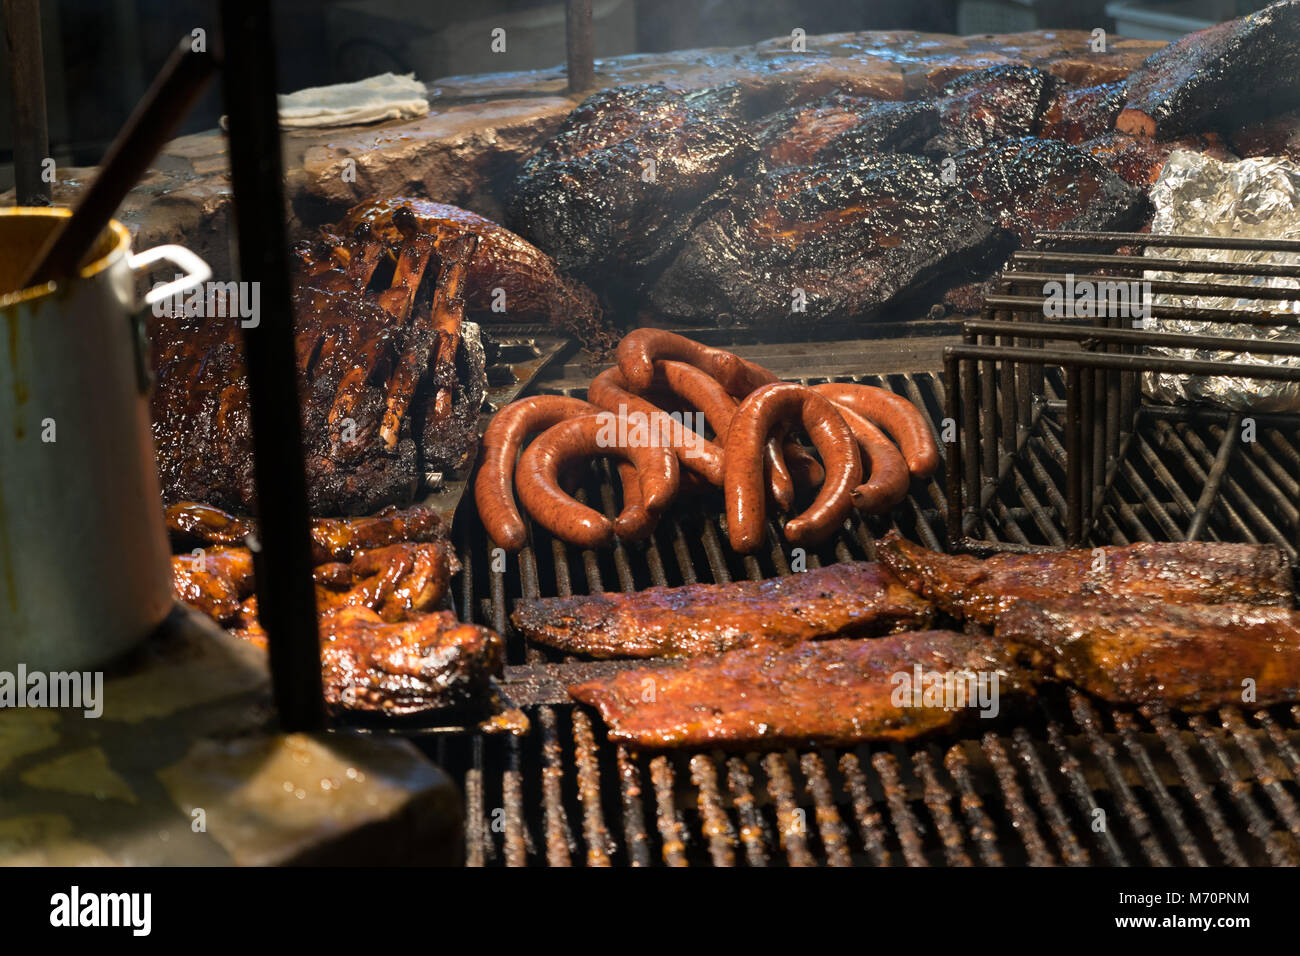 Texas style BBQ Pit geräuchertes Fleisch Rippchen Würstchen über Flamme  Stockfotografie - Alamy